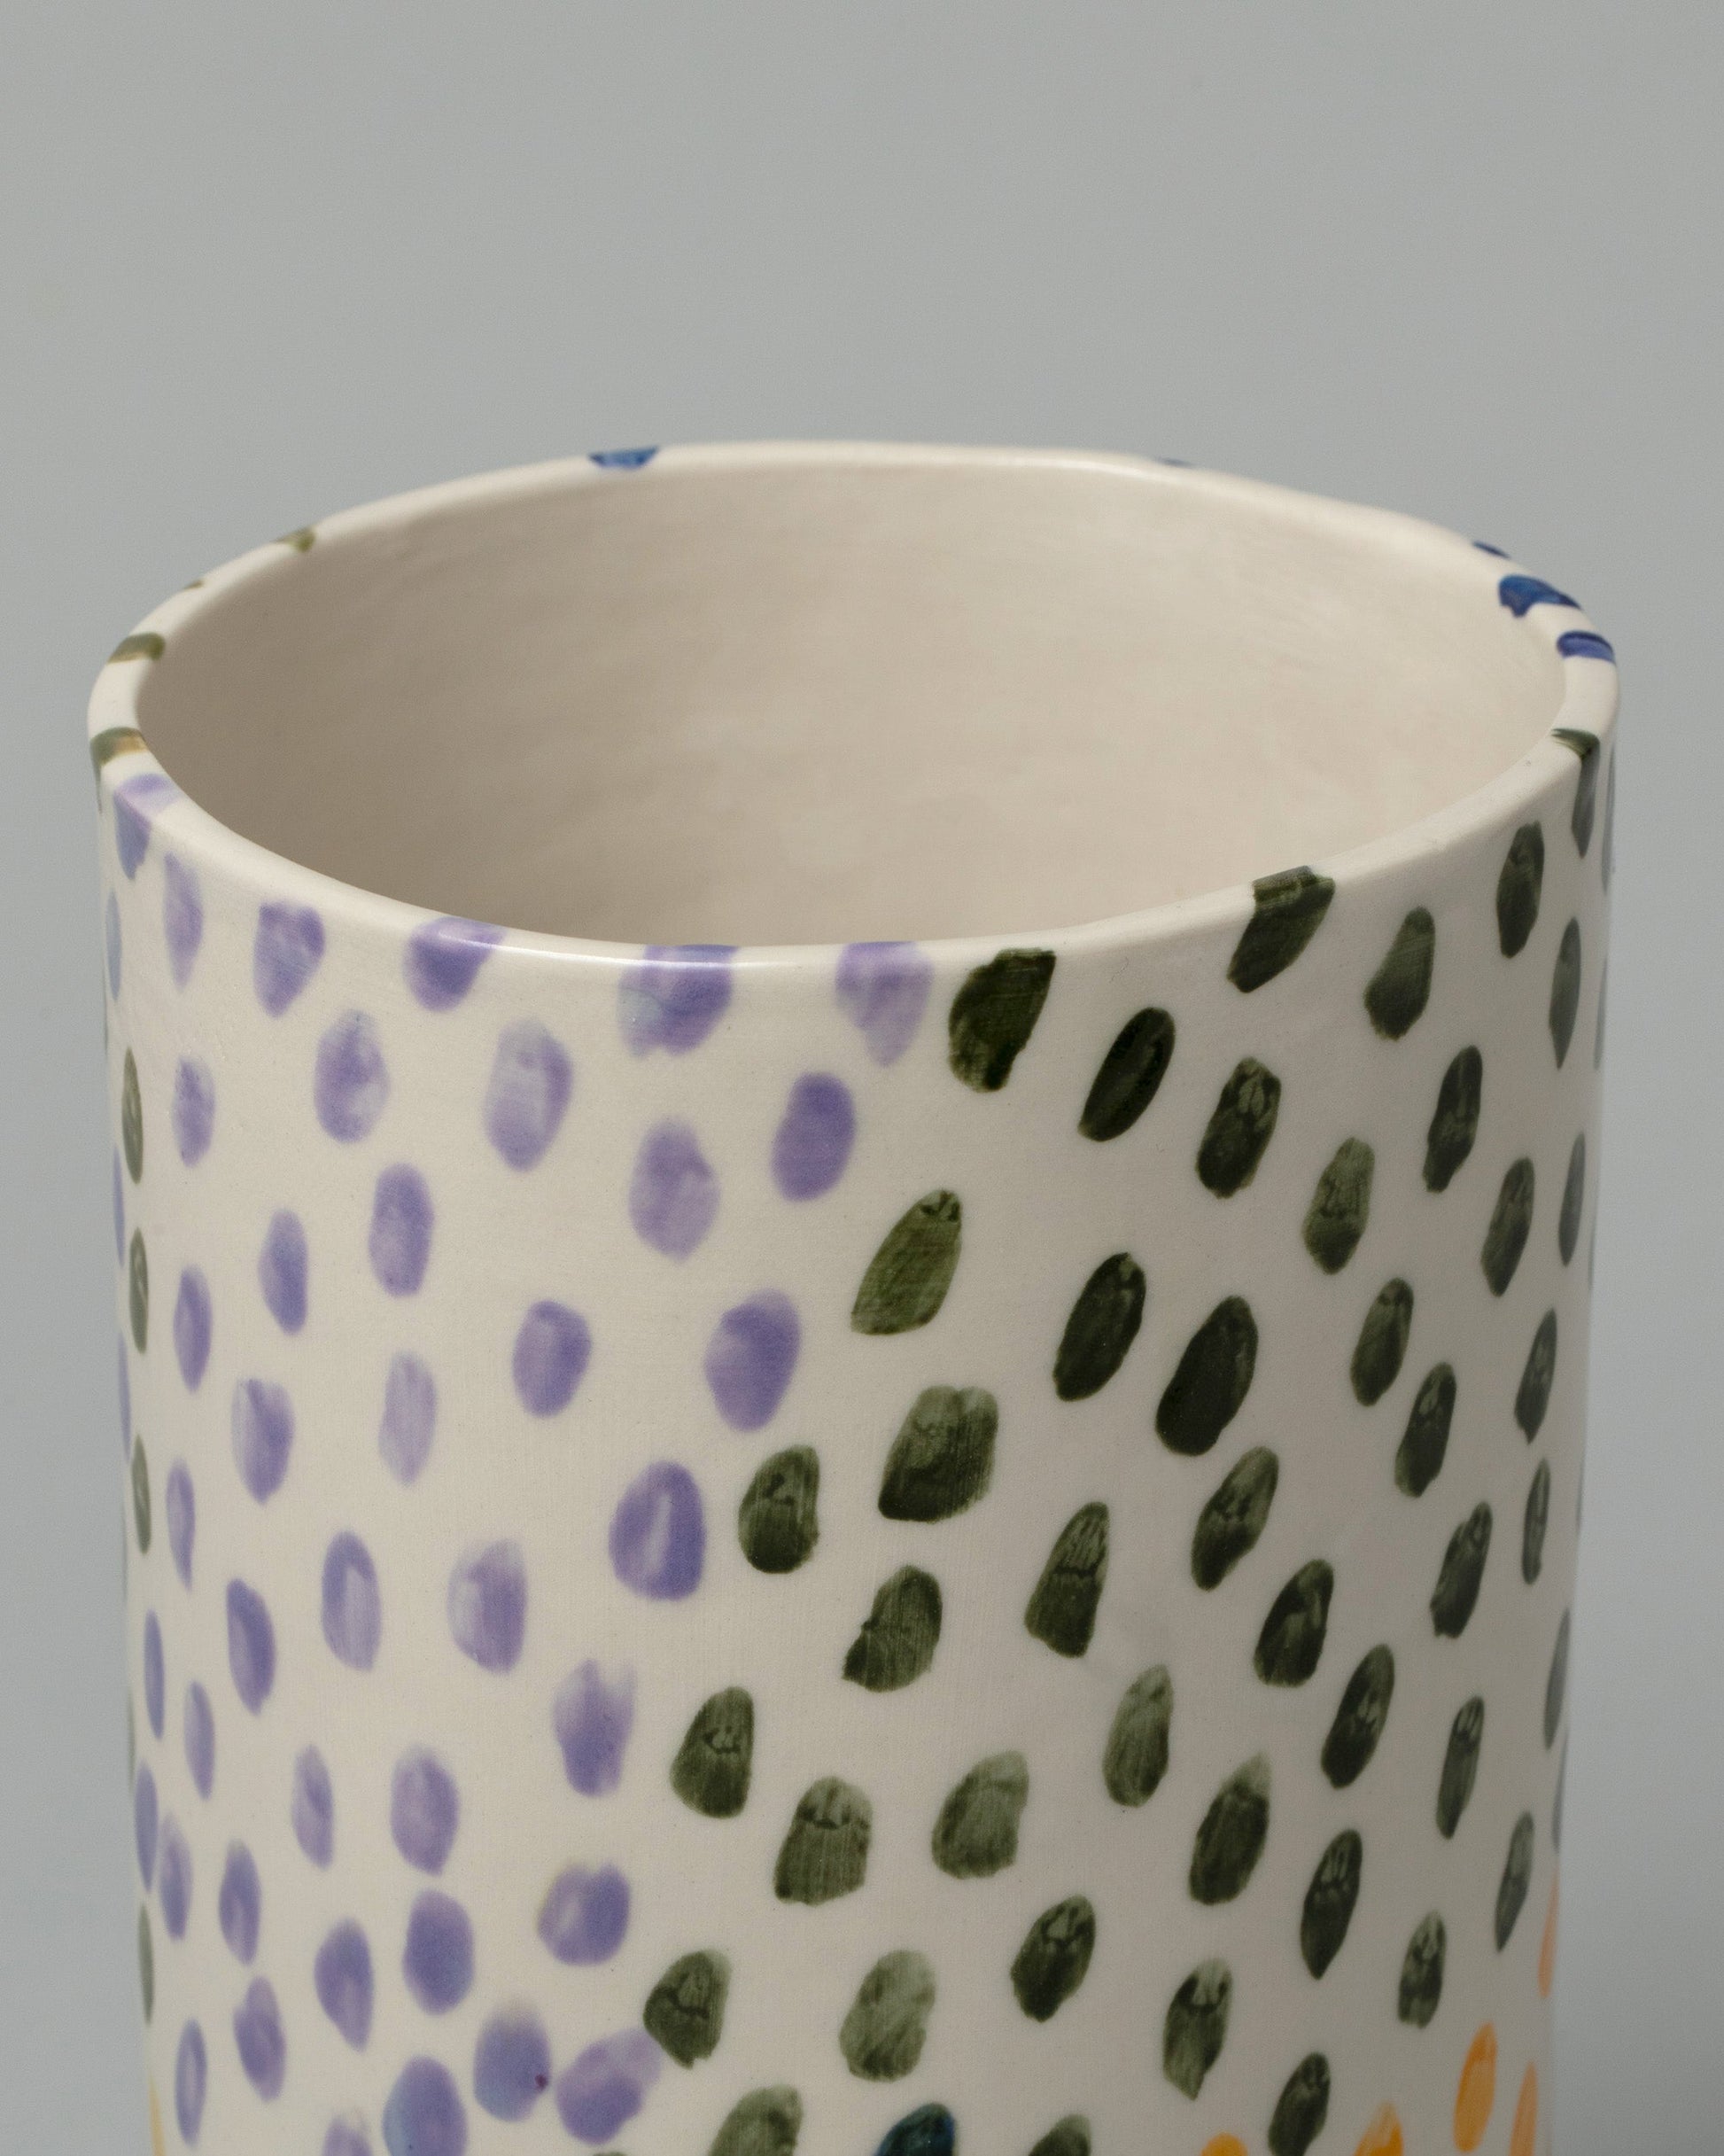 Closeup detail of the Amanda Lucia Côté Dots Vase on light color background.